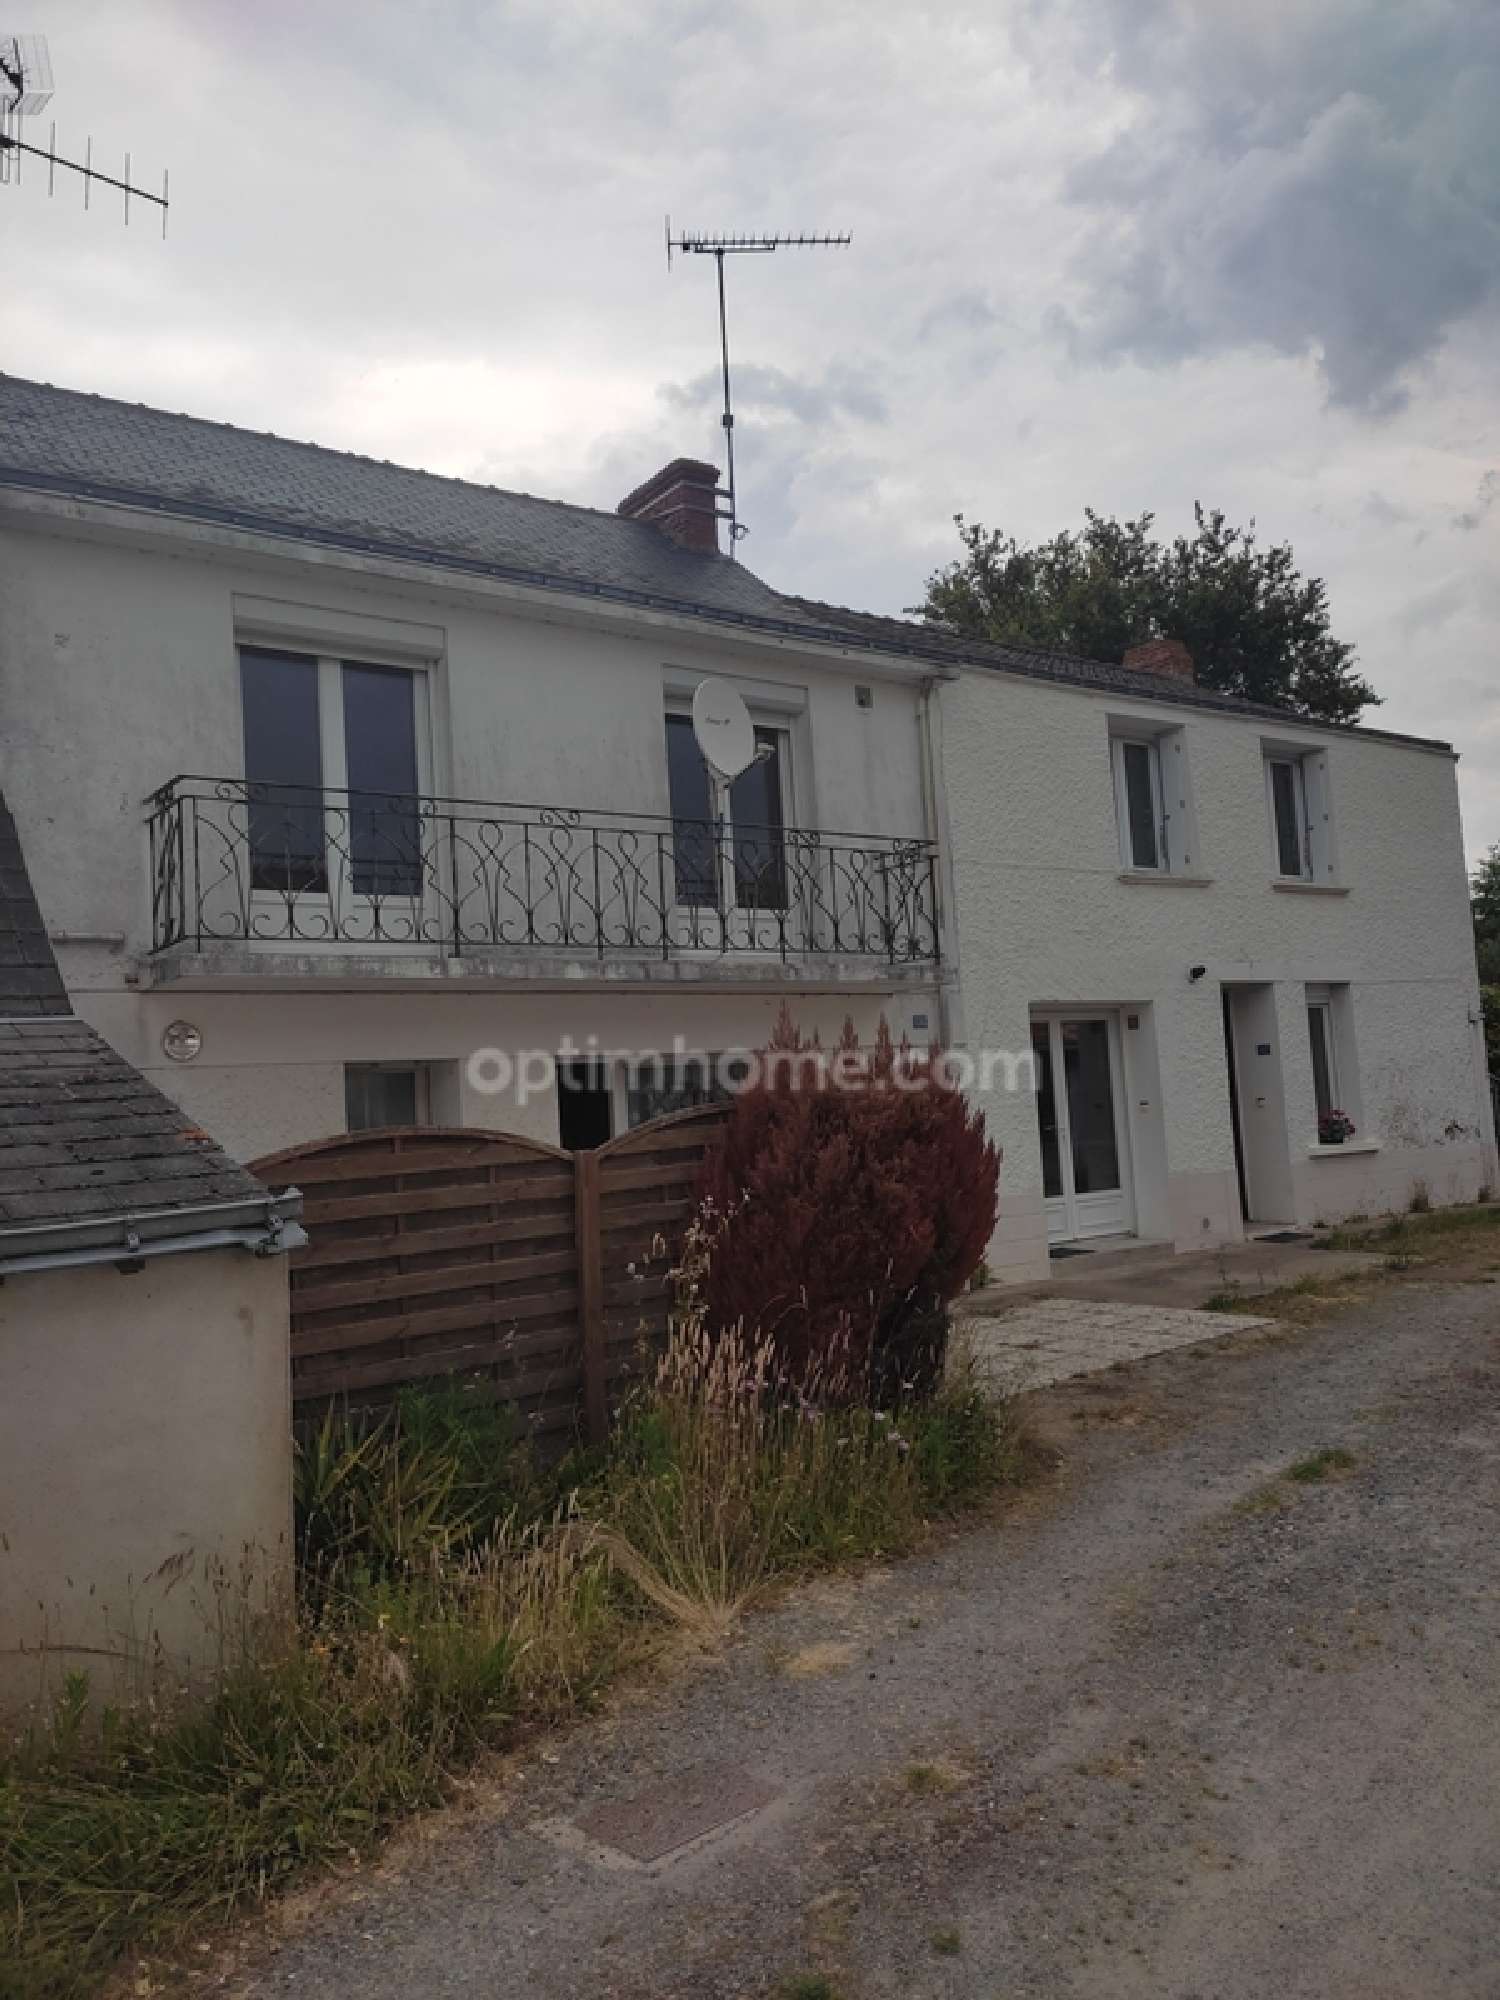  à vendre maison Saint-Joachim Loire-Atlantique 1